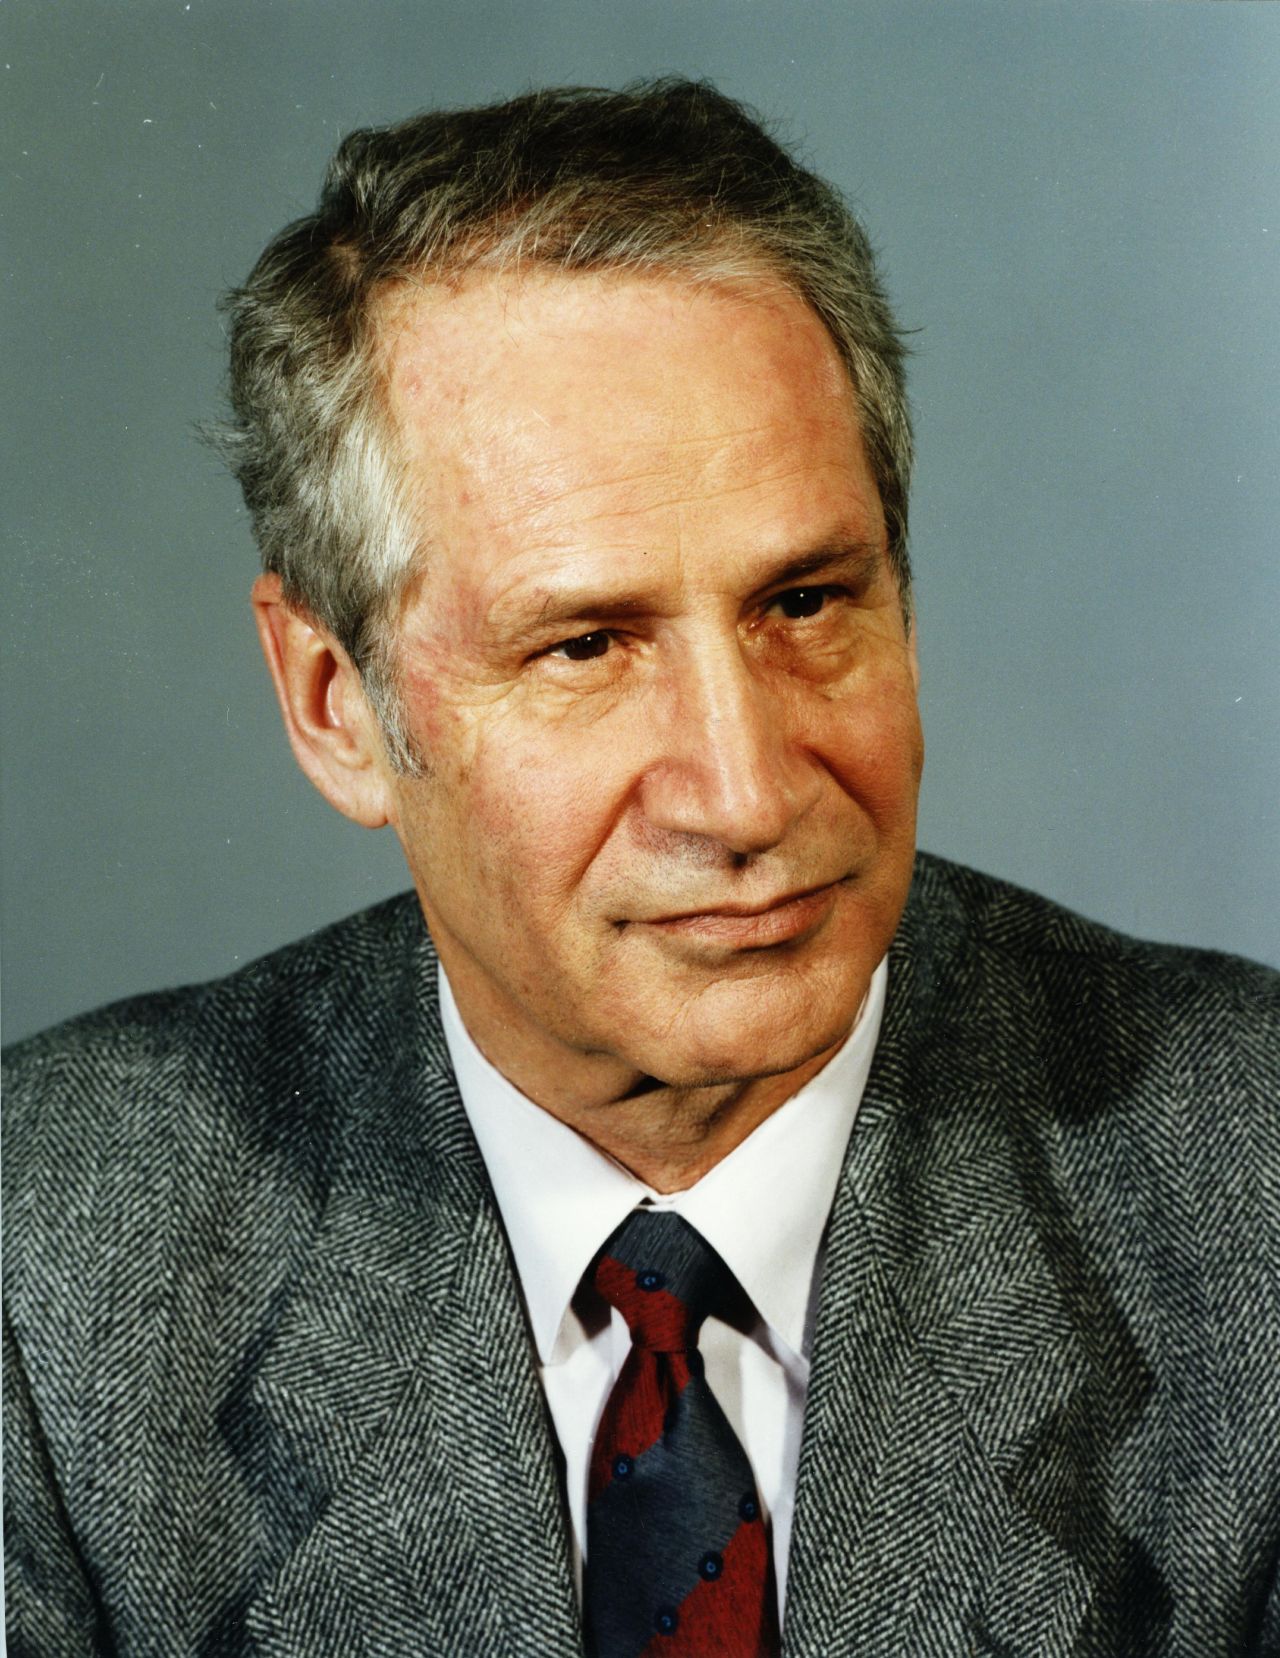 Porträtfoto von Markus Wolf, ehemaliger Leiter des Auslandsnachrichtendienstes des Ministeriums für Staatssicherheit (MfS) der DDR, 1989.